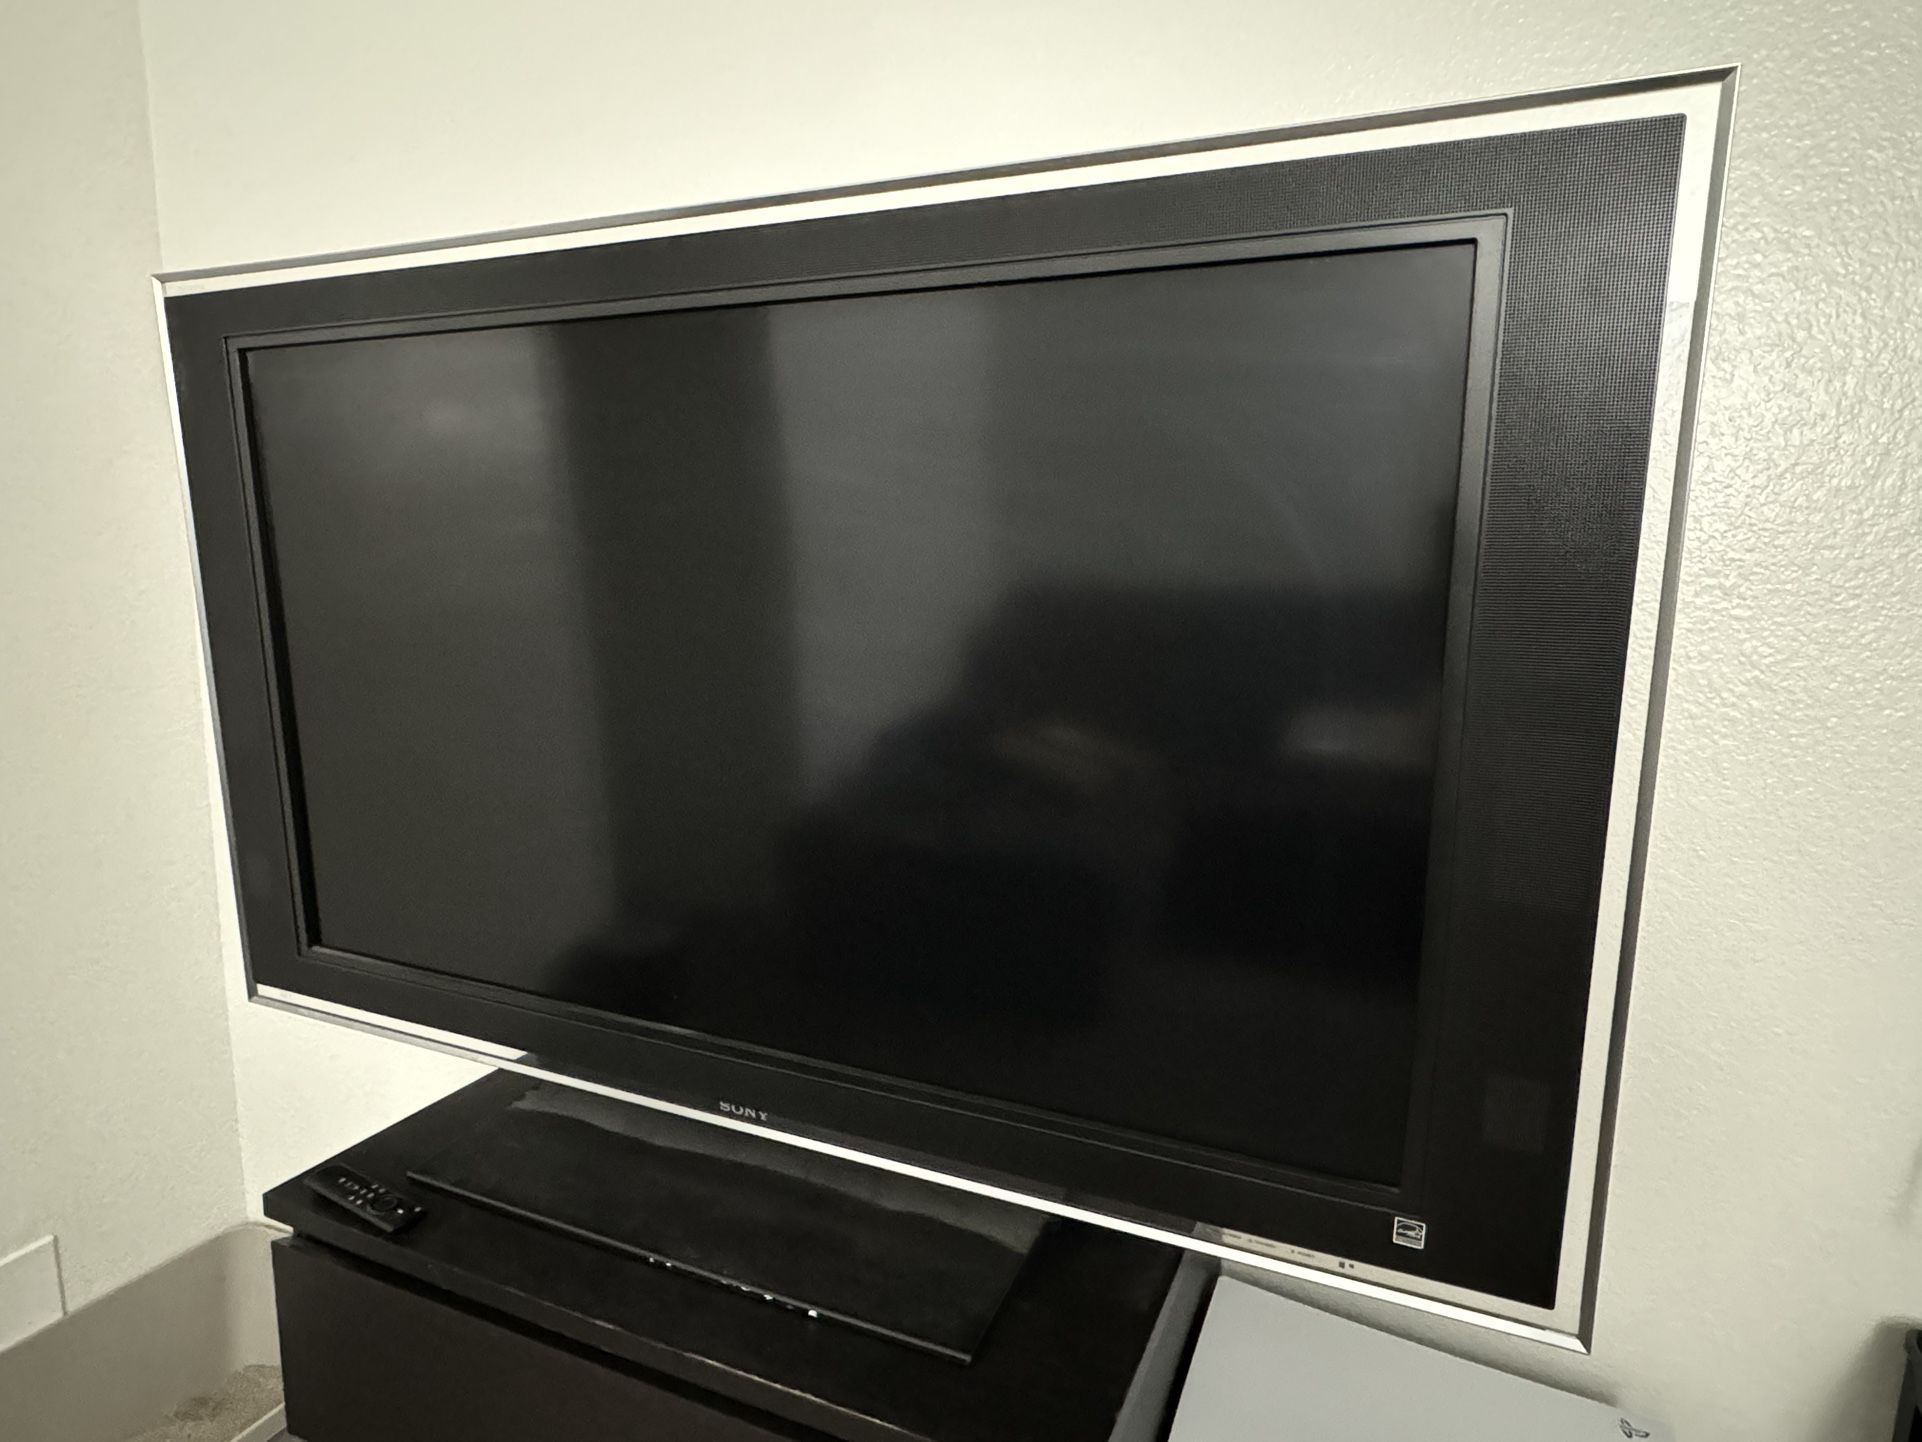 Sony Bravia XBR 52-inch LCD TV